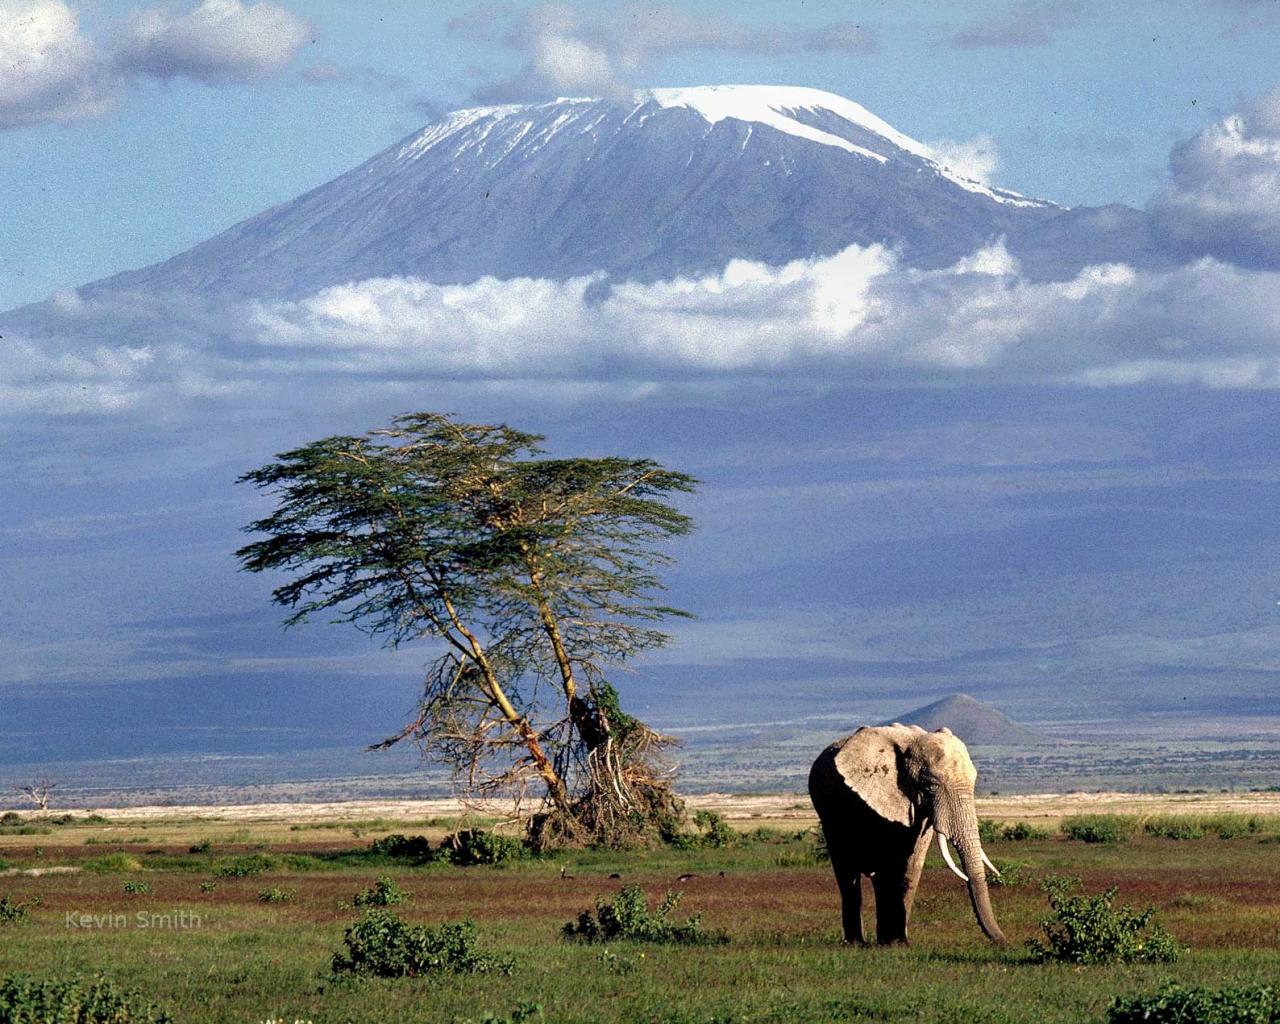 гора Килиманджаро